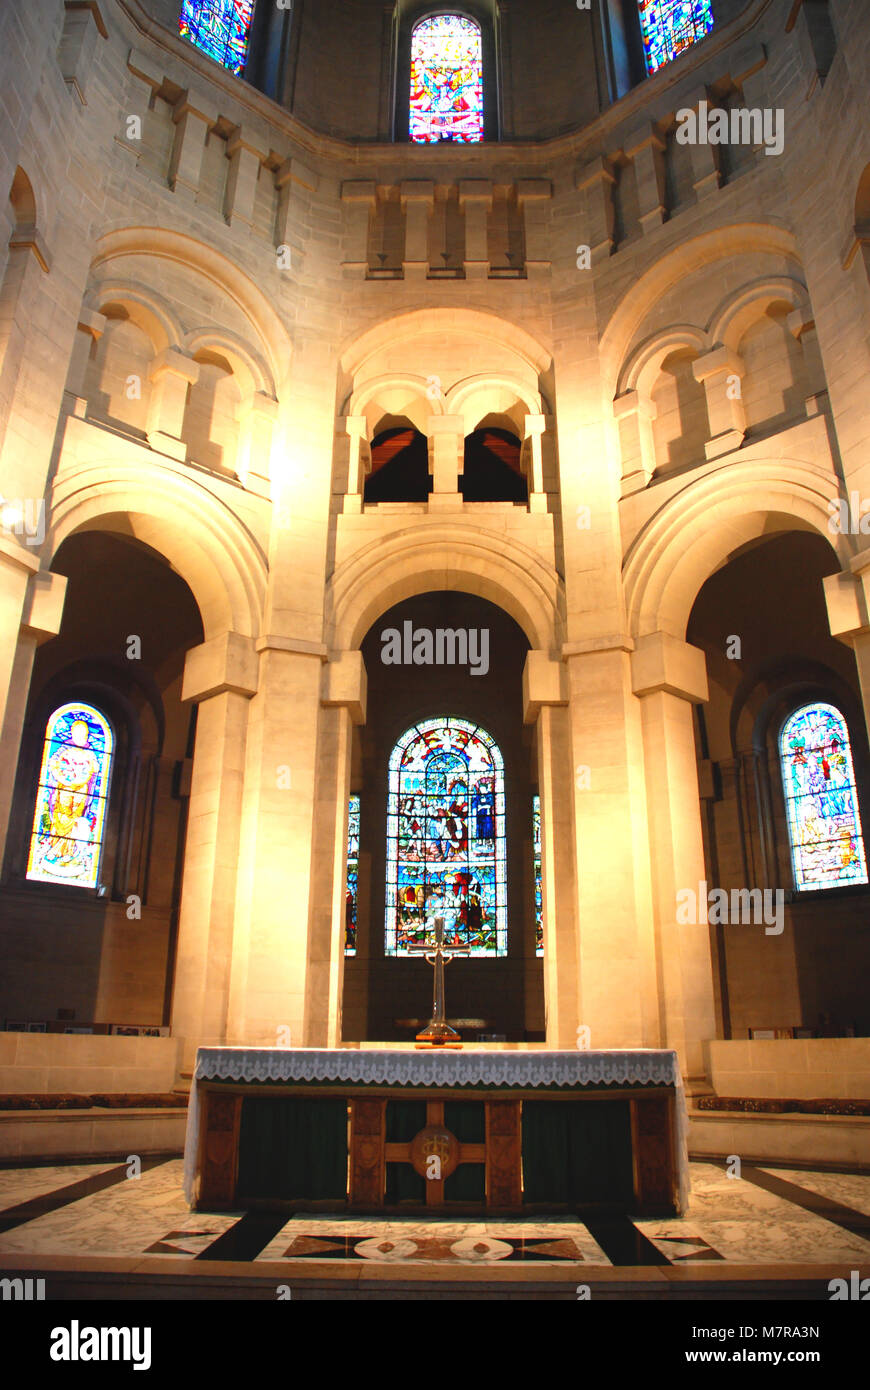 Innenraum von St. Anne's Cathedral, Belfast, Nordirland İreland, Großbritannien Stockfoto